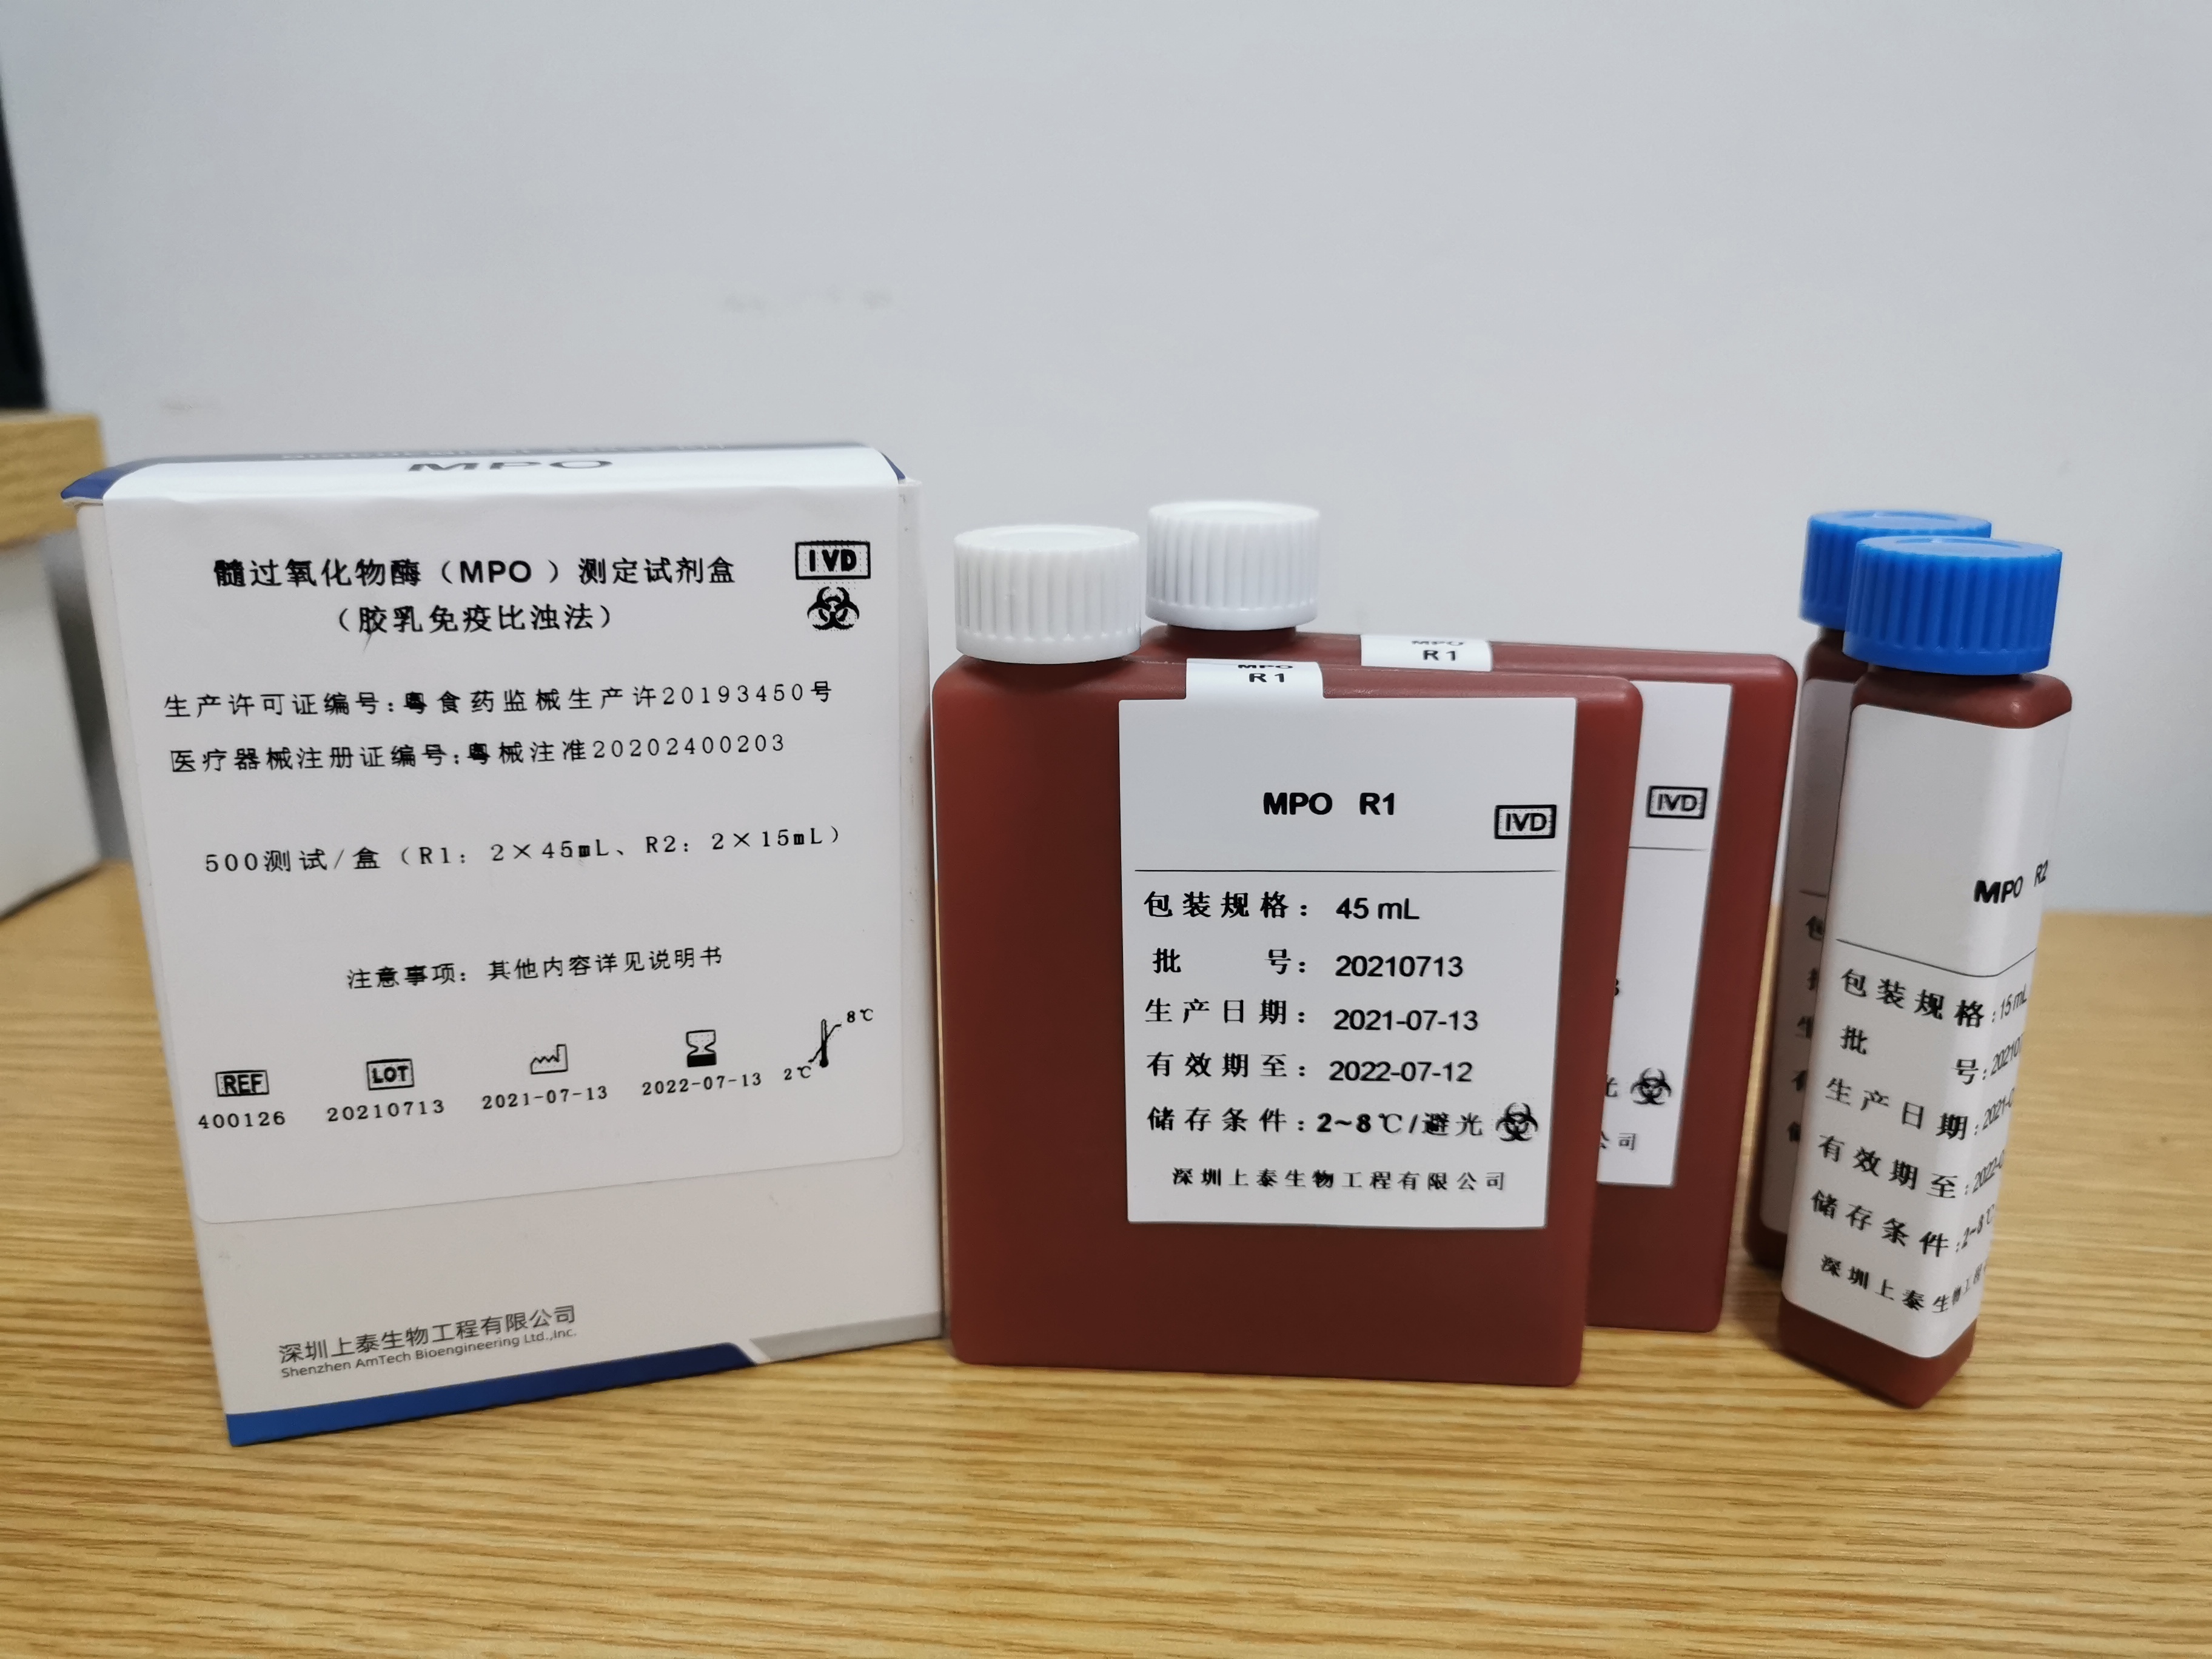 【深圳上泰】髓过氧化物酶(MPO)测定试剂盒(胶乳免疫比浊法)